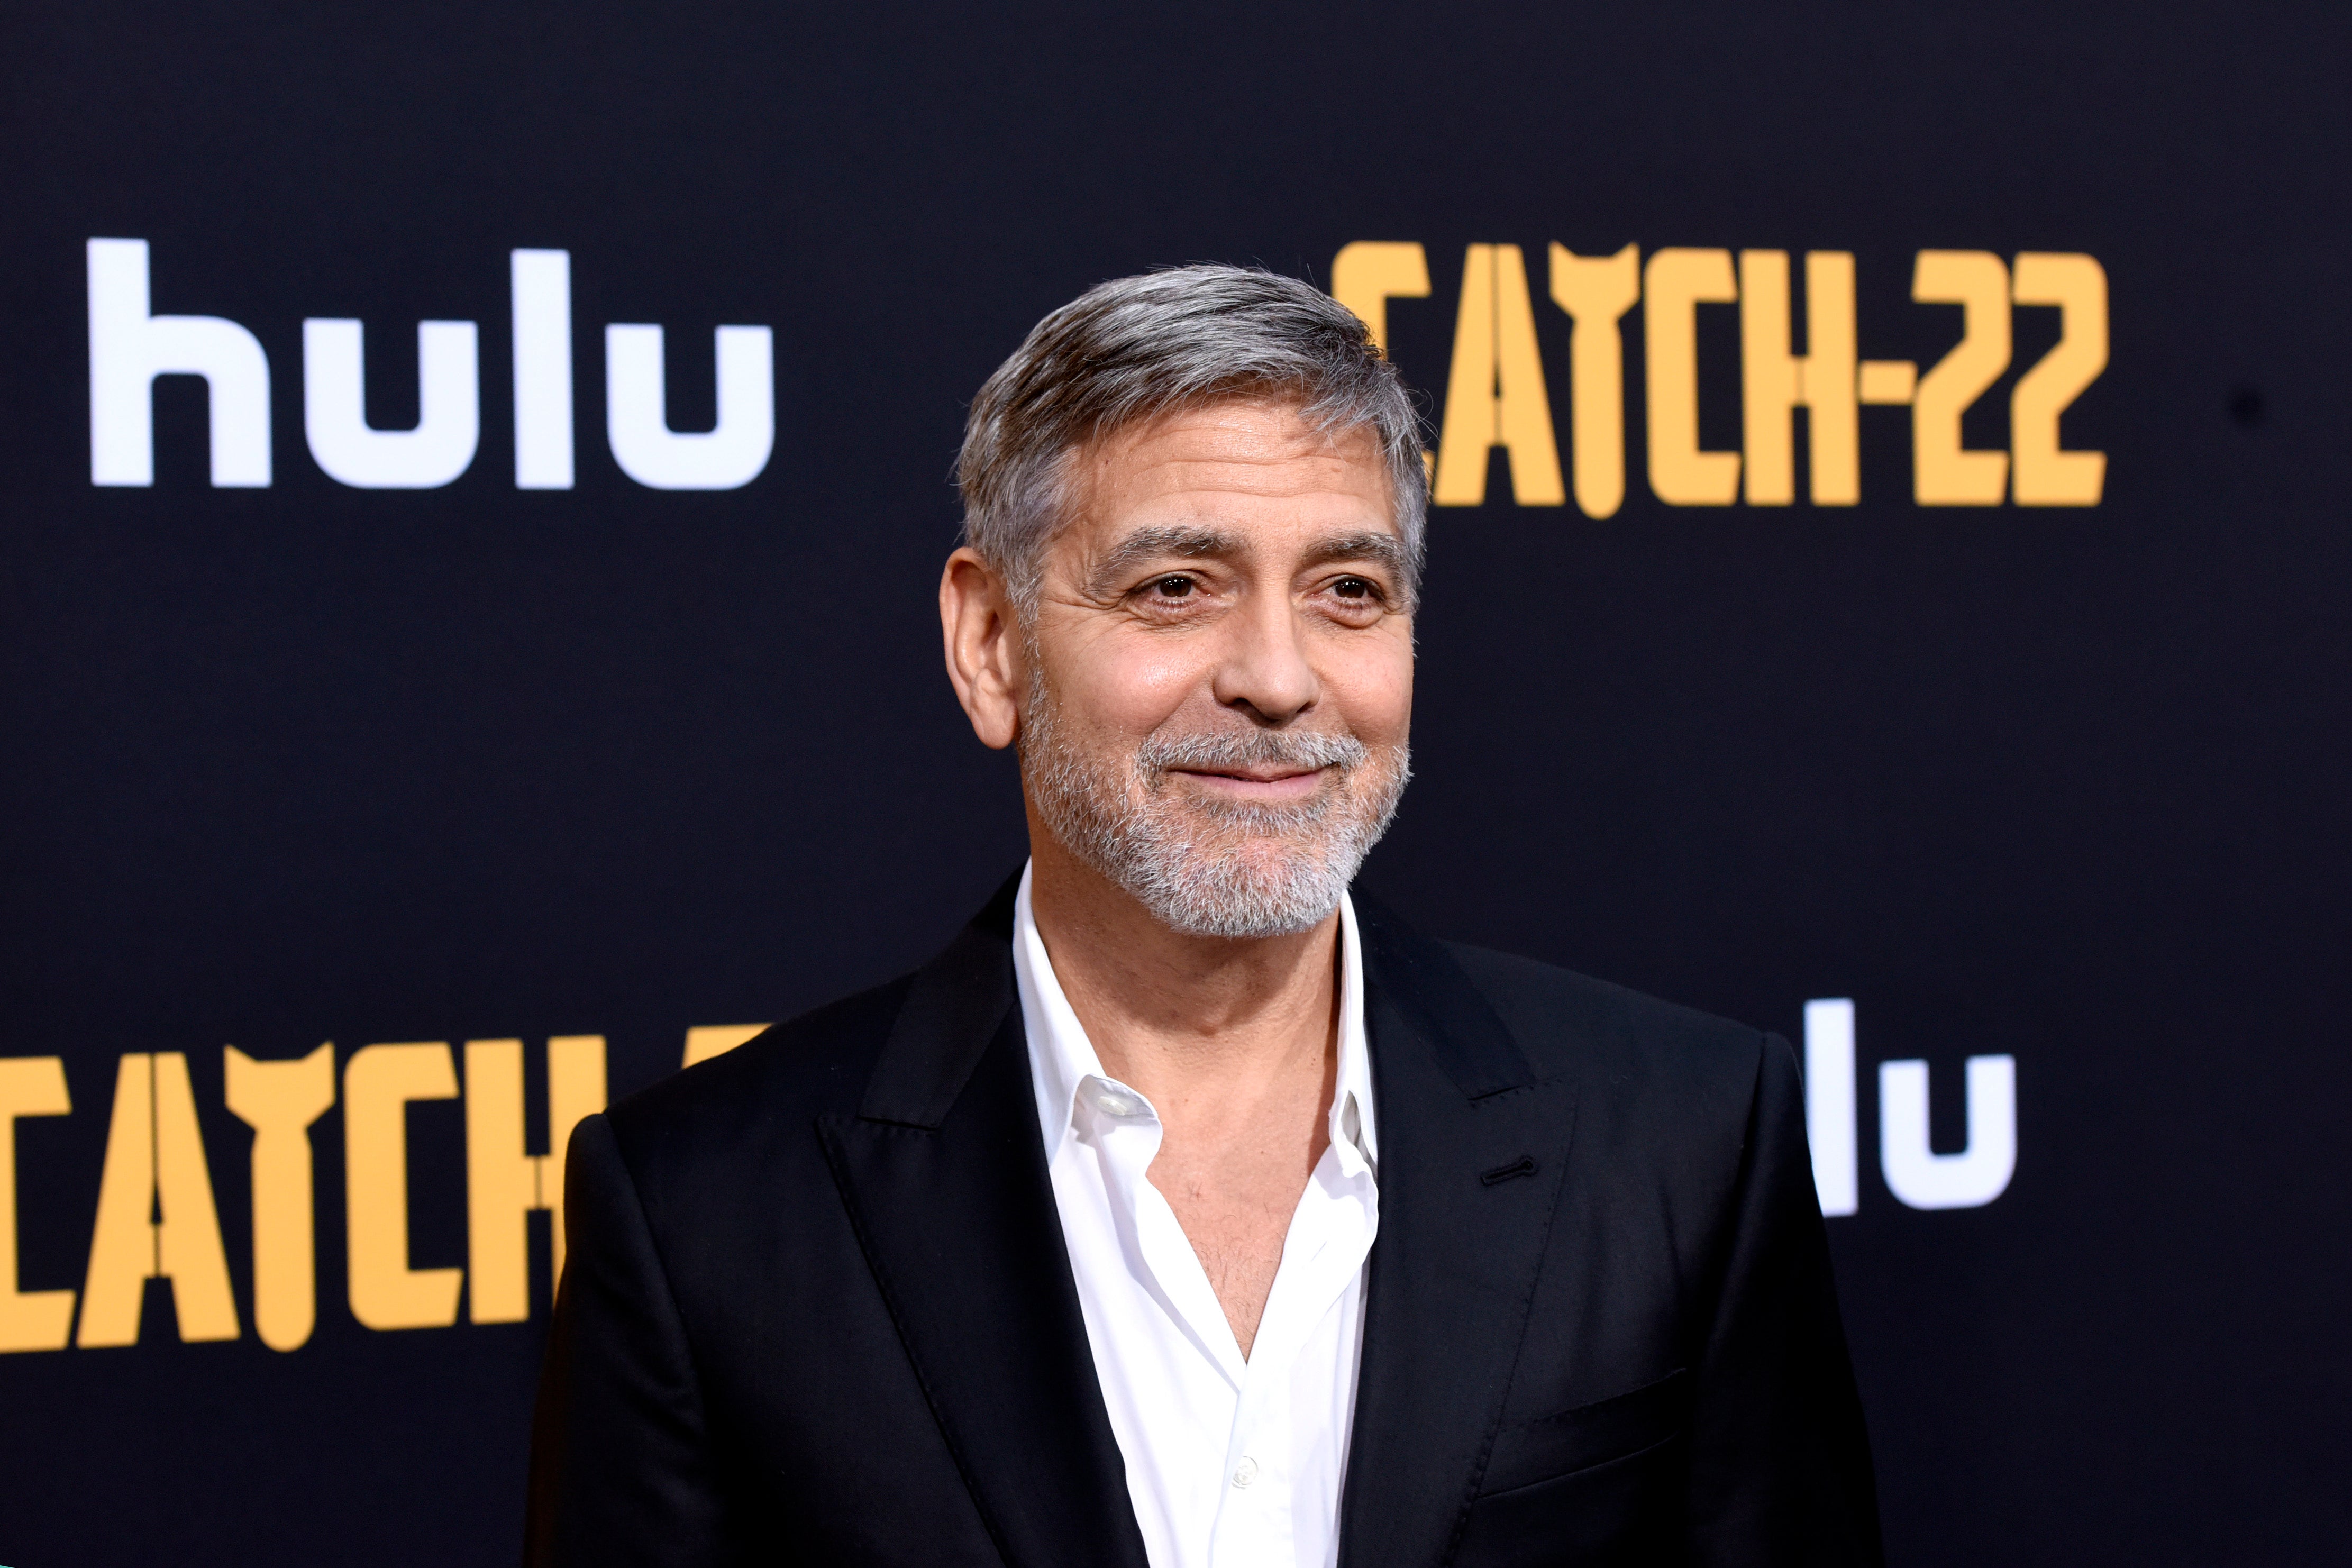 George Clooney asiste al estreno de "Catch-22" de Hulu el 7 de mayo de 2019 en Hollywood, California.